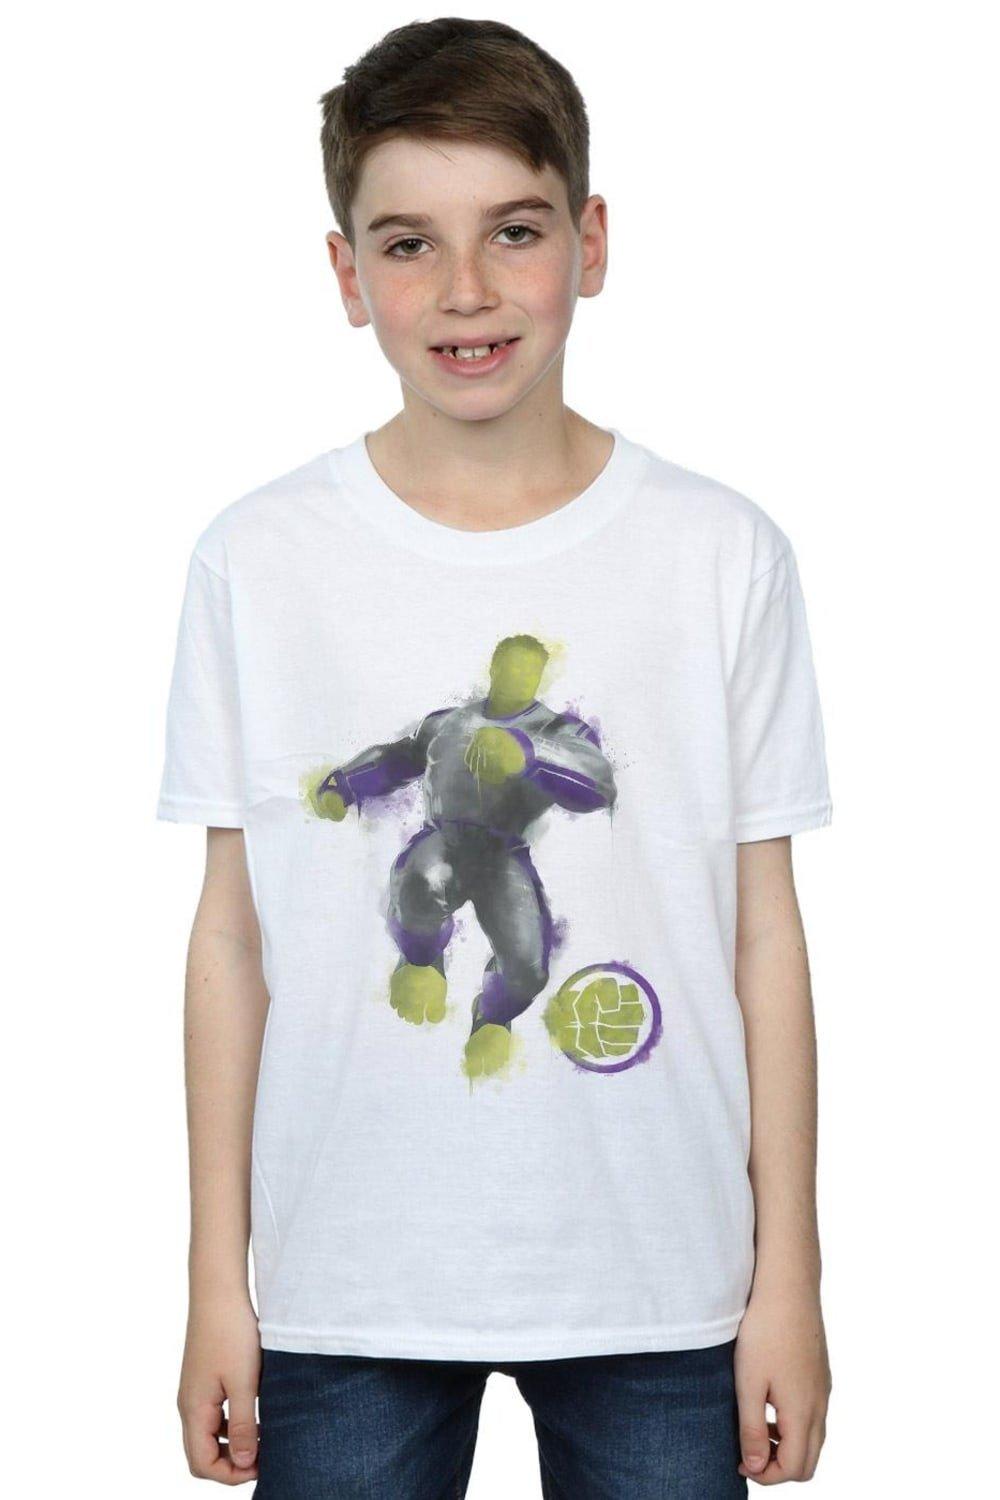 Avengers Endgame Painted Hulk T-Shirt